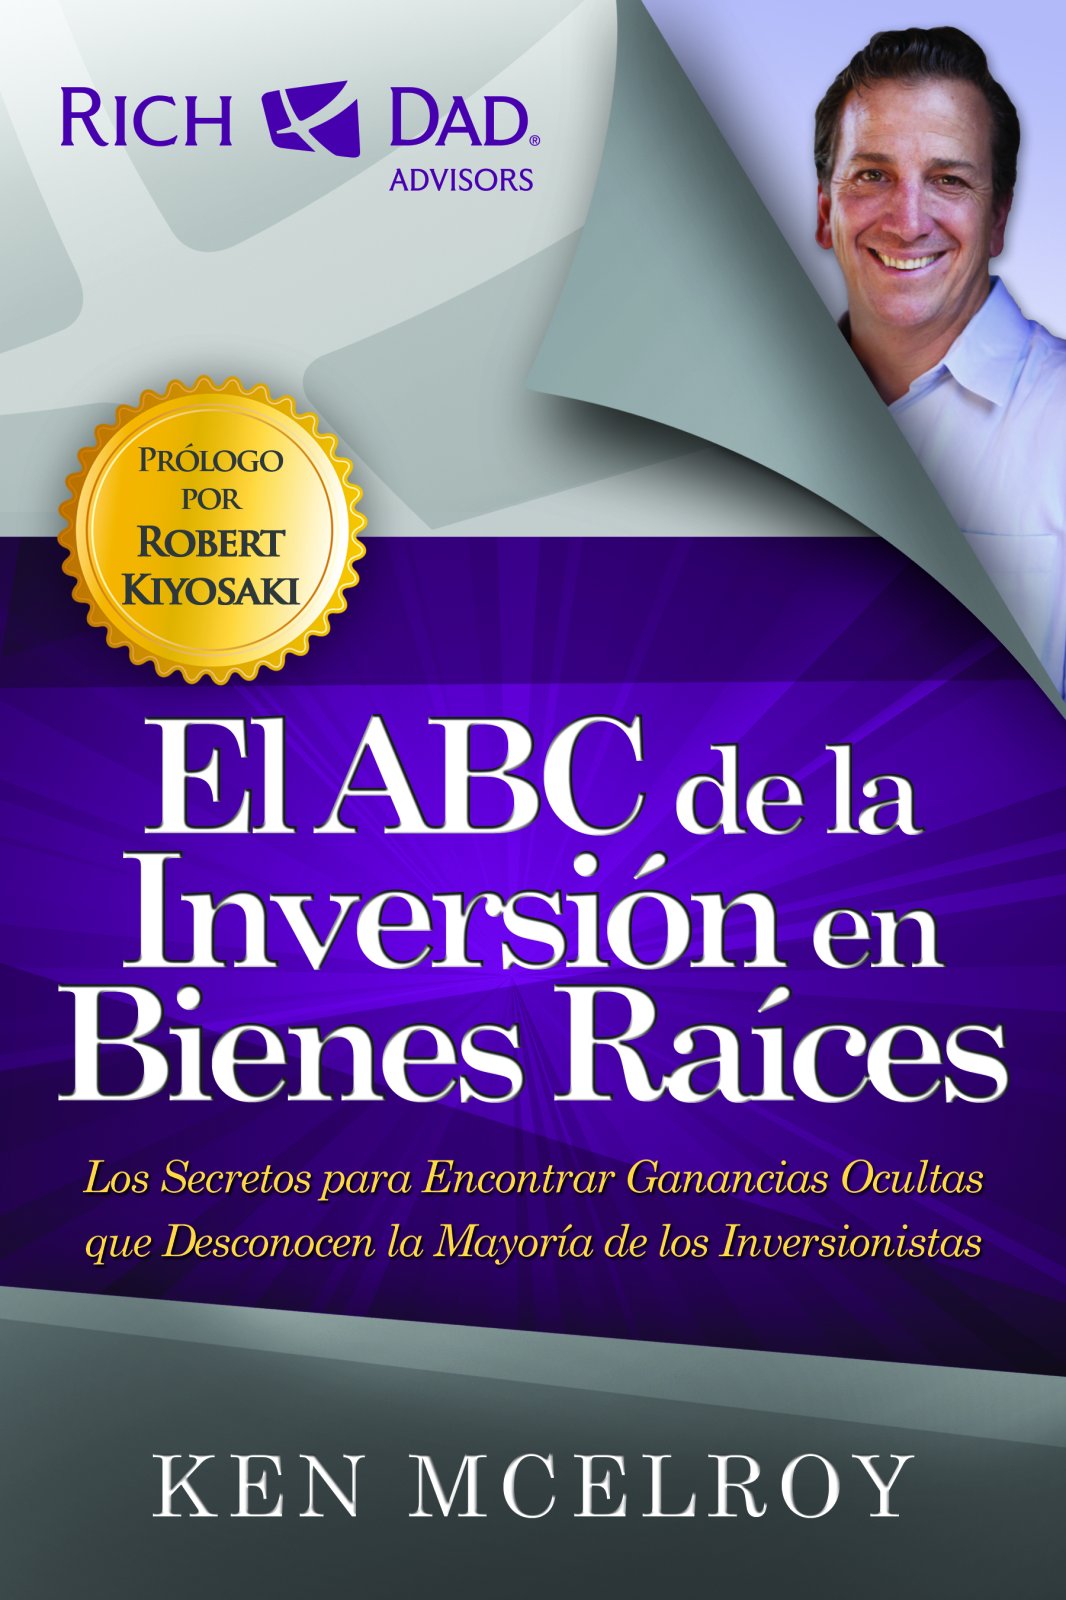 Rich Dad El Abc De La Inversion En Bienes Raices Books N Things Warehouse